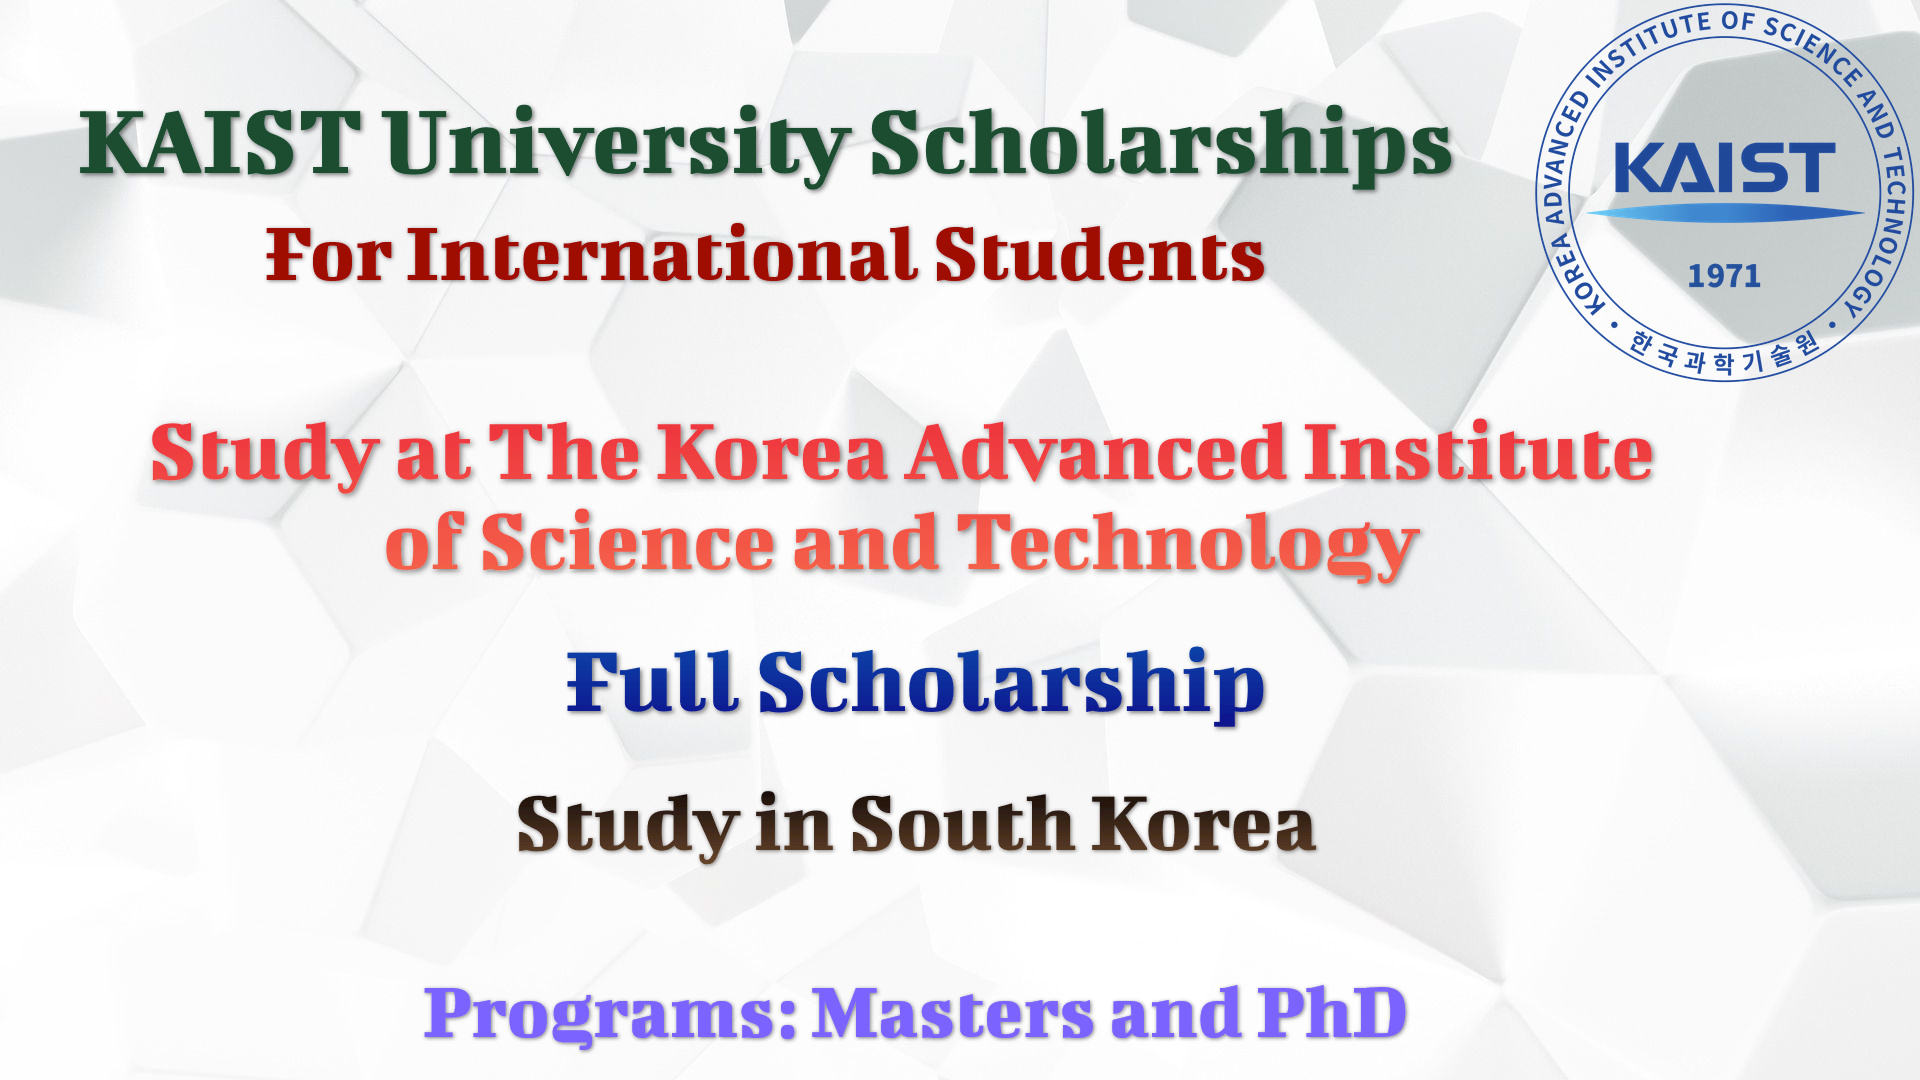 KAIST University Scholarships